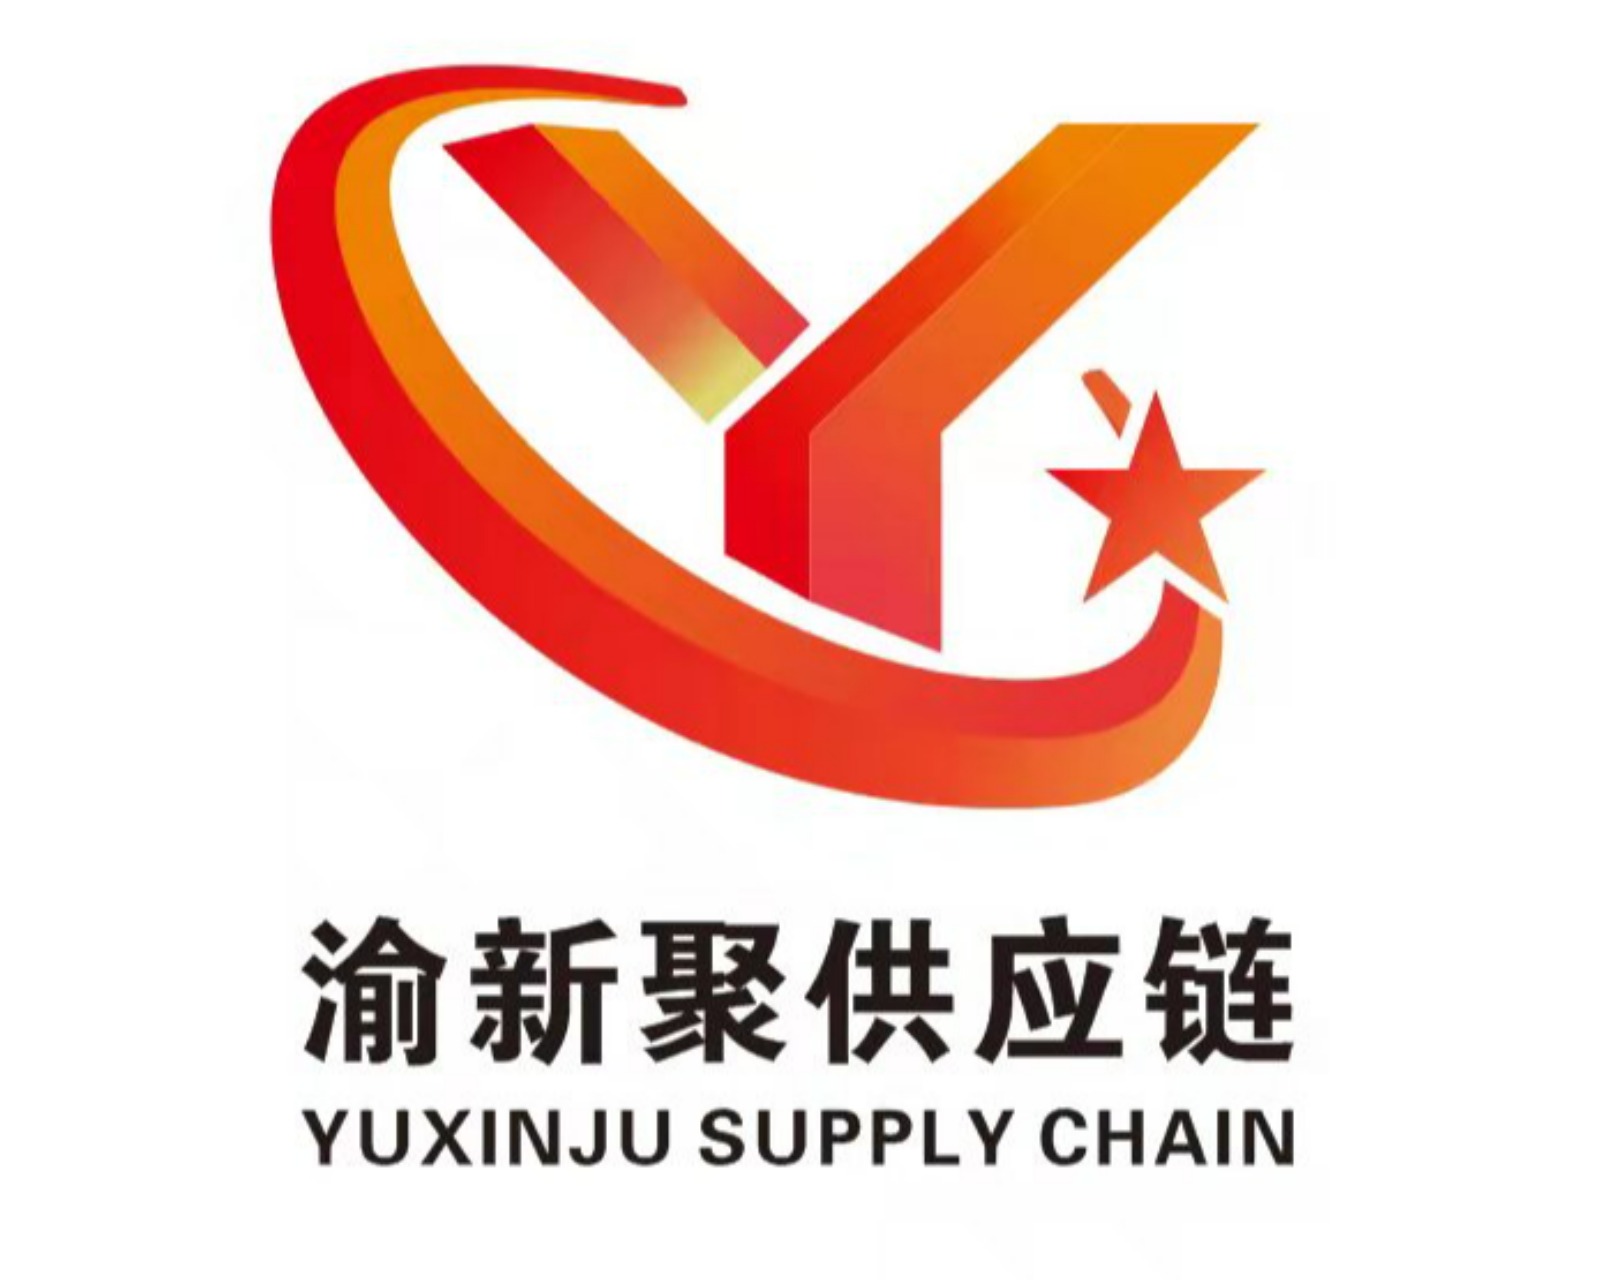 重庆渝新聚供应链管理有限公司的专线公司的形象展示LOGO